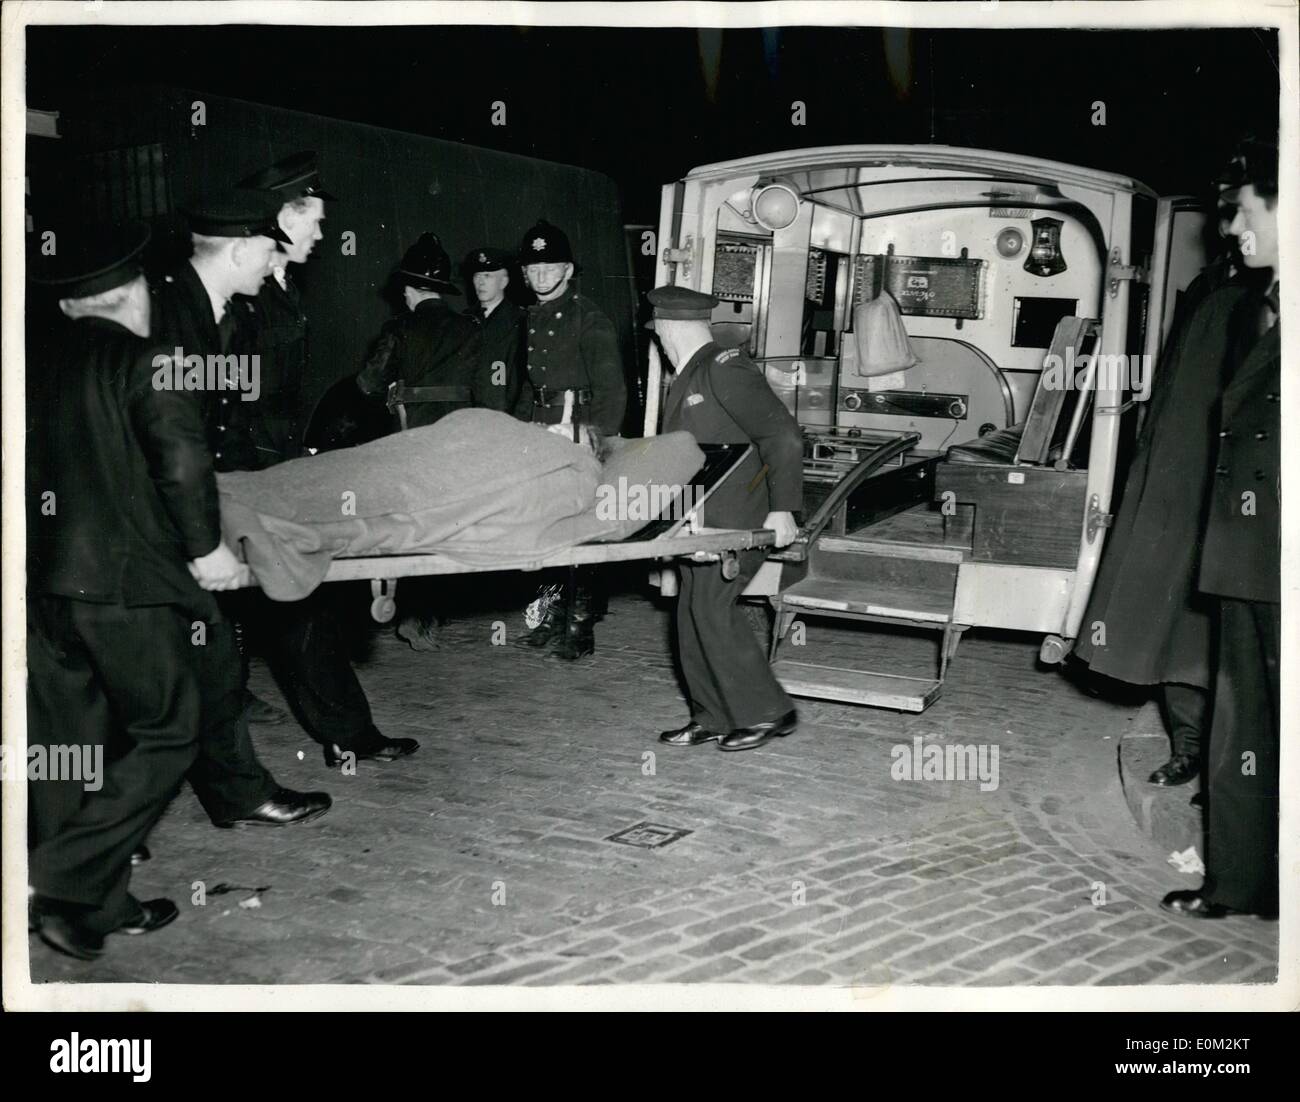 Avril 04, 1953 - Neuf morts dans la catastrophe du Tube : Neuf personnes sont mortes aujourd'hui connu dans le tube Central Line disaster à Stratford hier soir, le pire dans l'histoire de l'underground de Londres. C'est le deuxième entraîneur de l'Ealing Broadway-Epping qui s'est former le gros de l'accident. Le train s'est heurtée à l'arrière d'un autre train roulant de Greenford à Hainaut. Photo montre pompier effectuer un habitué les femmes sur une civière de statique Stratford hier soir. Le tunnel bloqué l'épave et seulement une ligne de civière les hommes pouvaient fonctionner. Banque D'Images